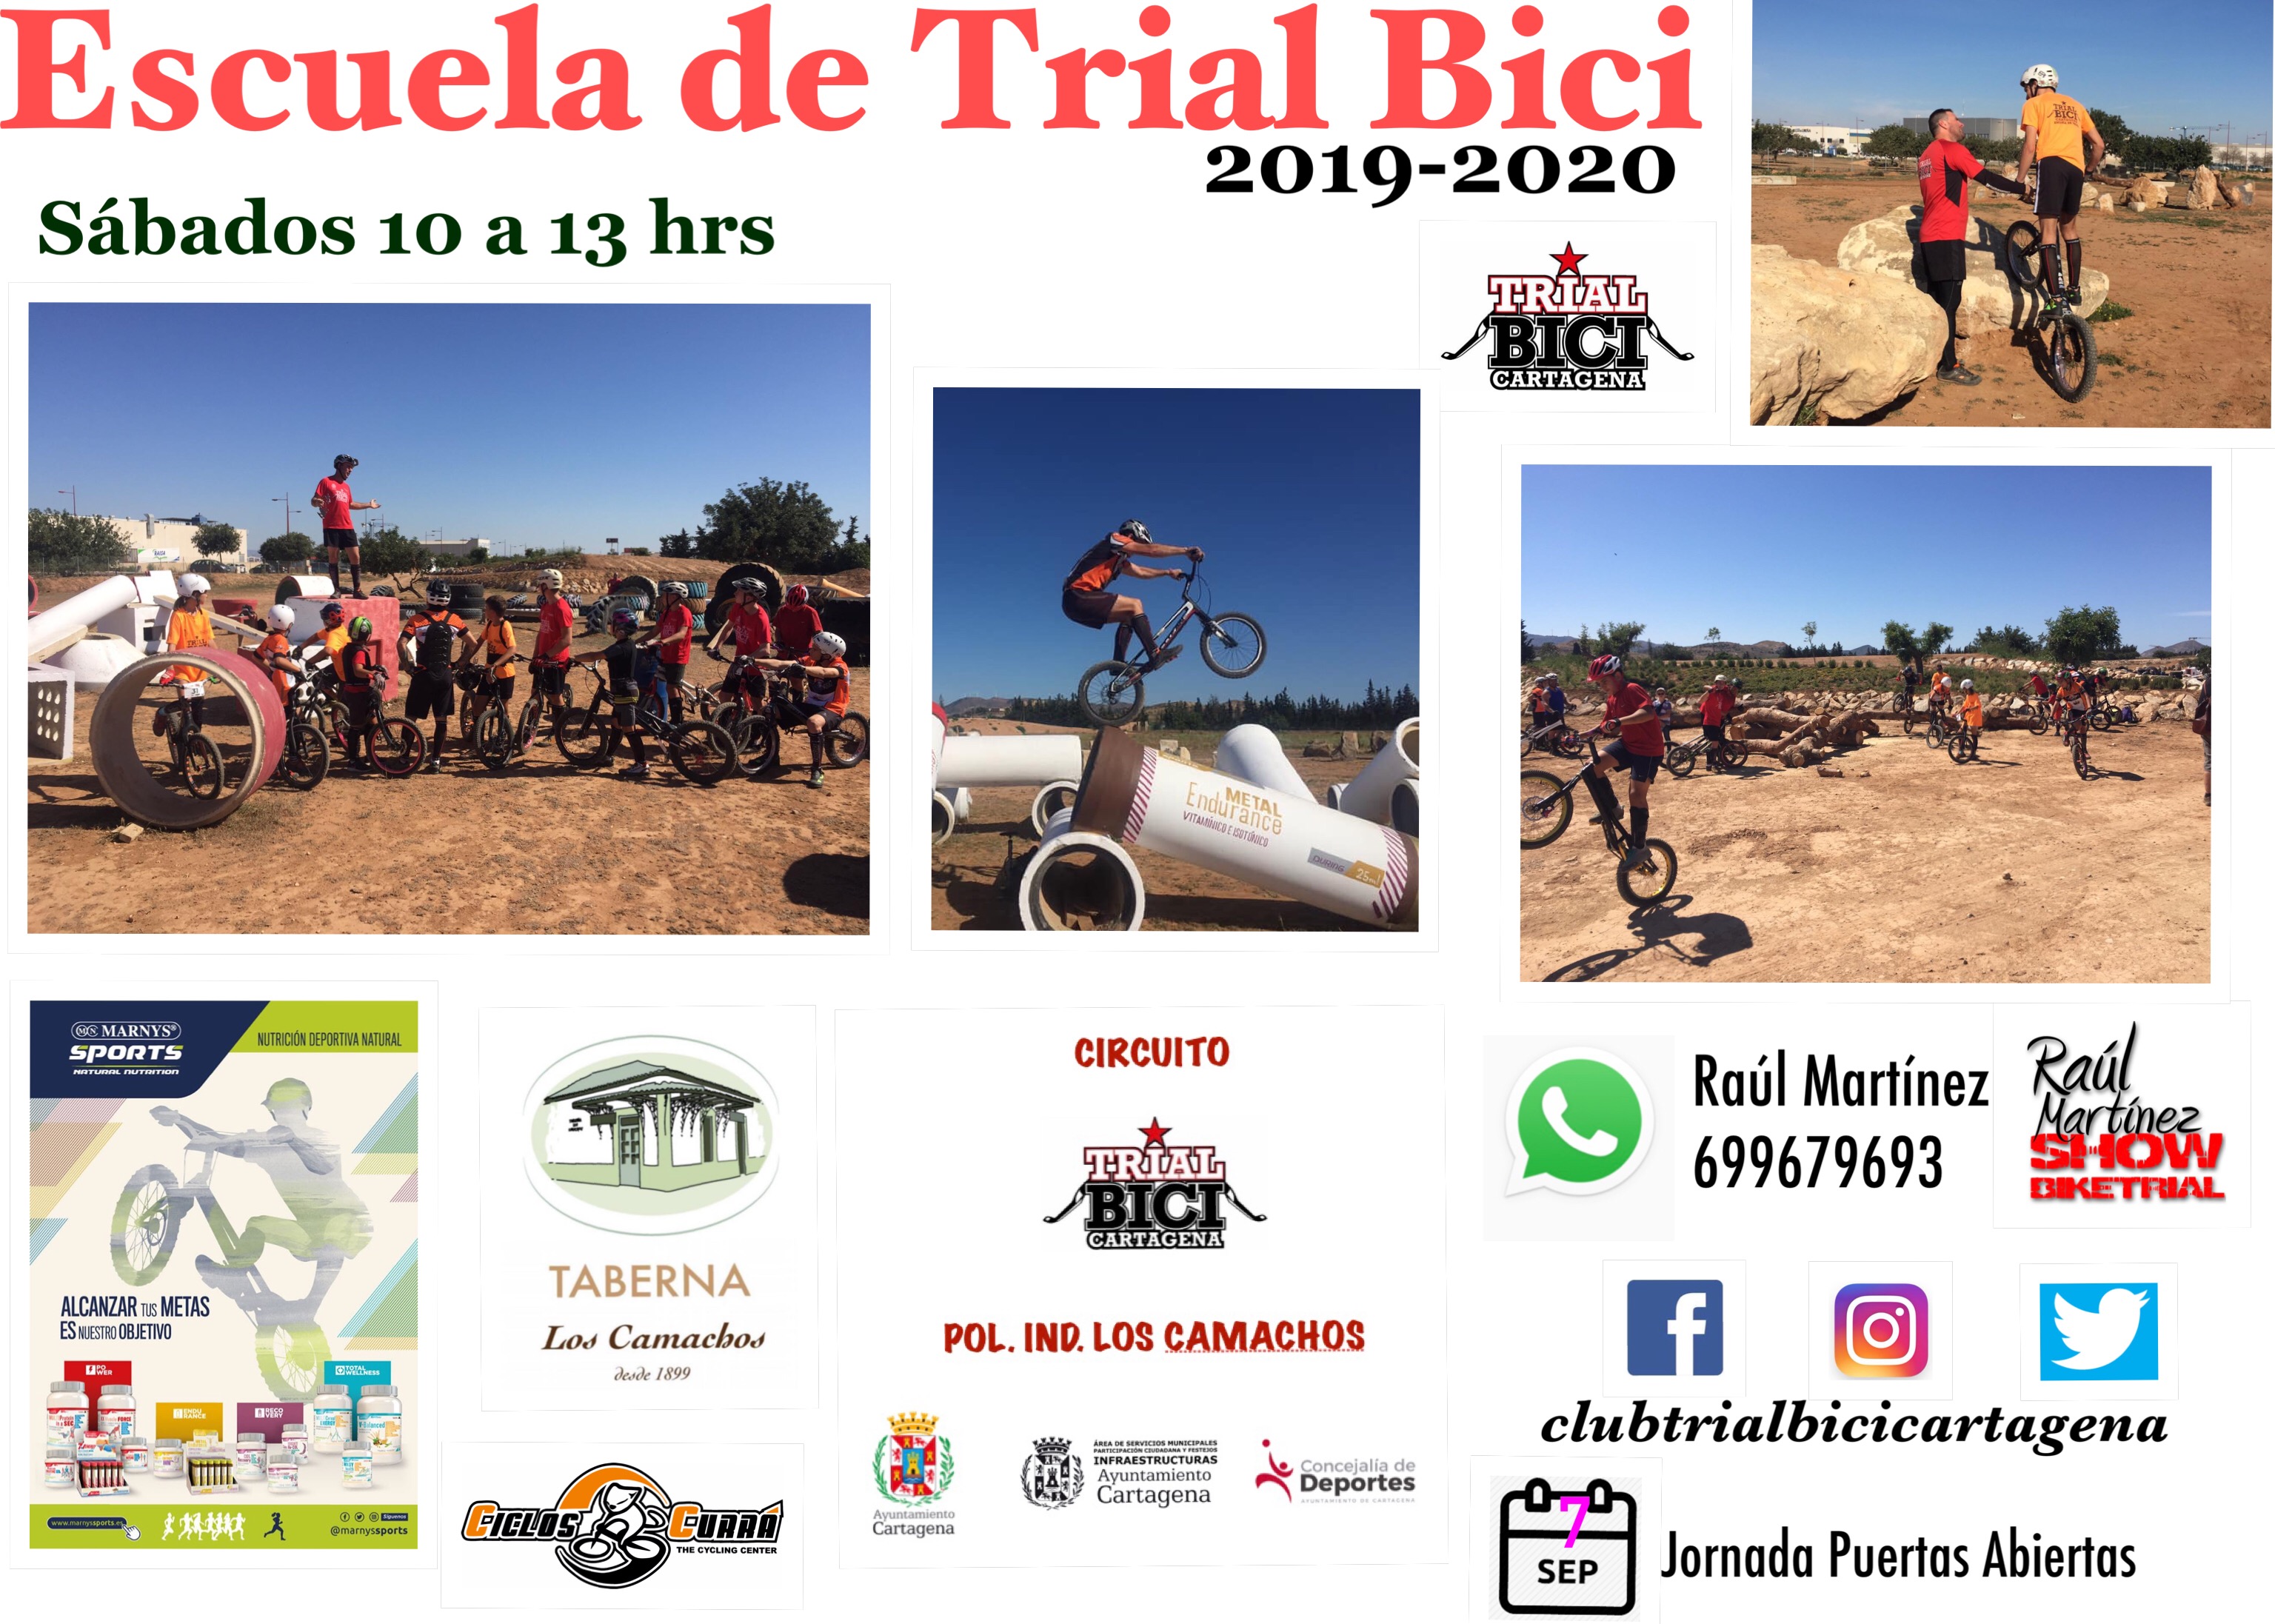 Escuela Trial Bici Cartagena – Jornada Puertas Abiertas 7 Septiembre